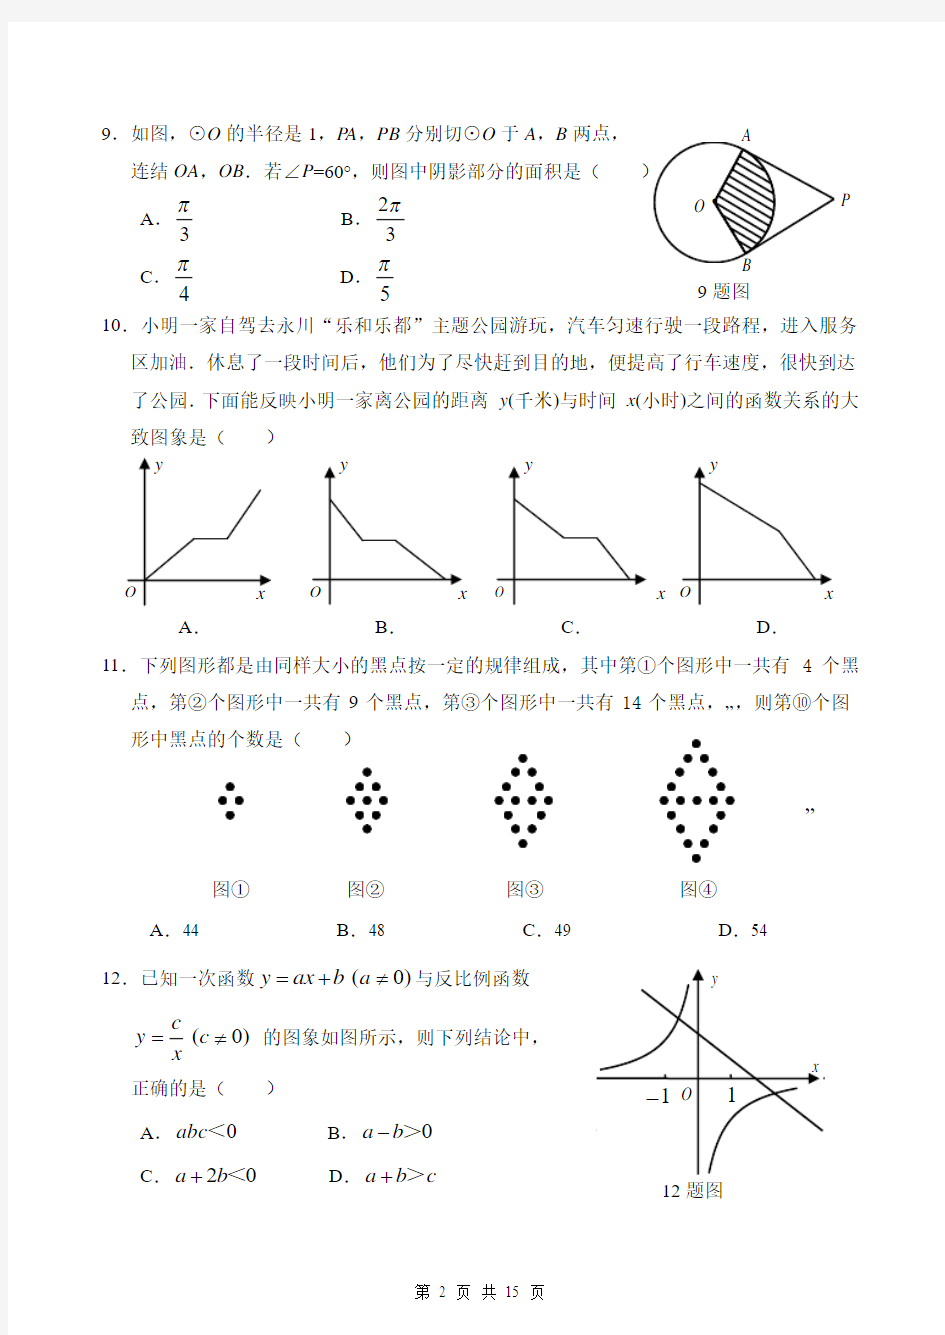 重庆市沙坪坝区2014年中考适应性考试数学试题(含答案)(B5)